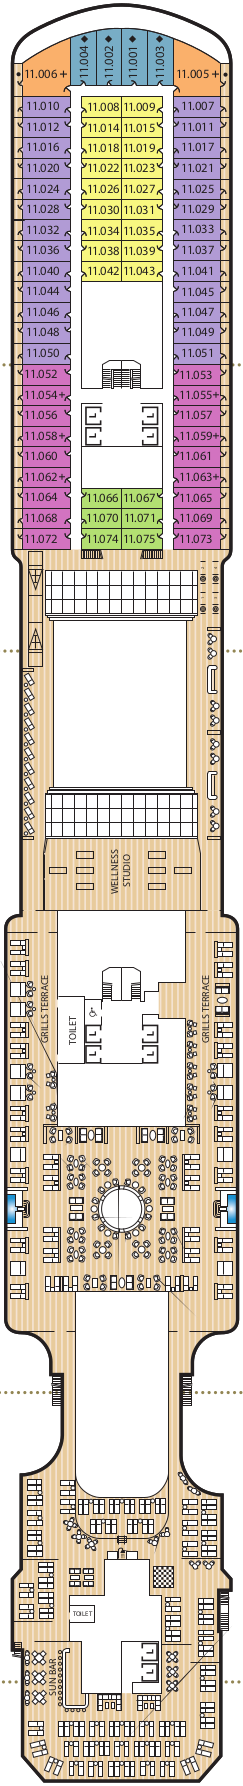 Queen Anne Deck 11 Deck Plan